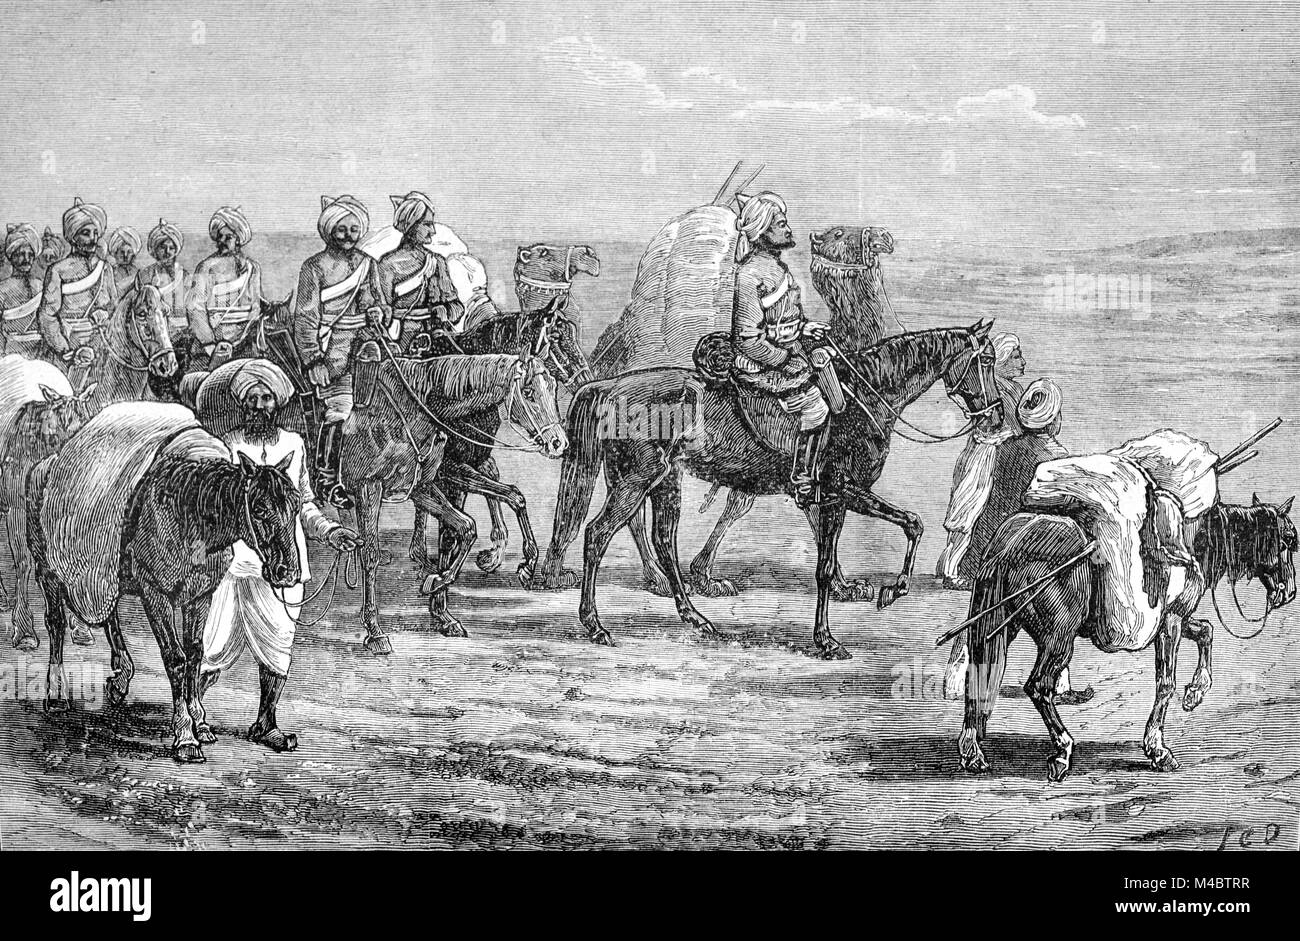 Cavalerie indien de lutte contre l'armée britannique durant la Deuxième Guerre Anglo-afghane Afghanistan (1878-1880) entre l'empire britannique des Indes et de l'Émirat d'Afghanistan (gravure, 1880) Banque D'Images